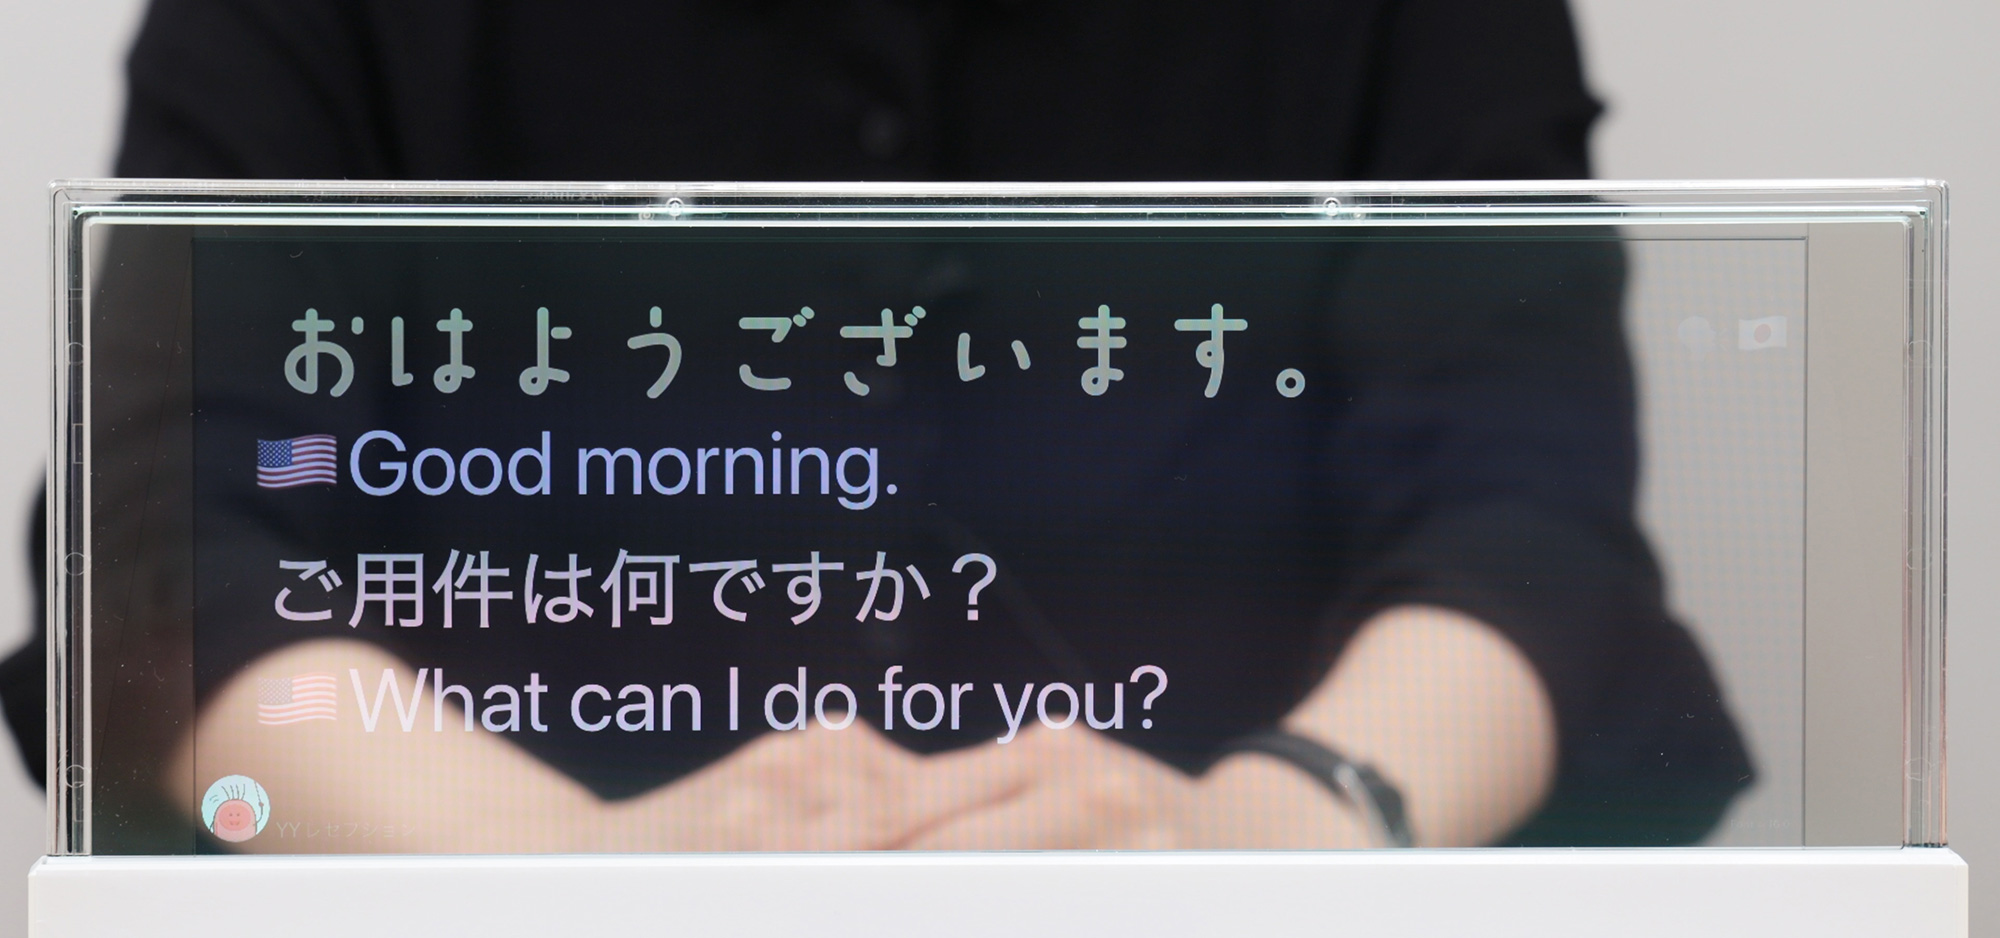 DNP対話支援システムの画面。透明な液晶ディスプレイに話した内容が表示され、日本語が英語に翻訳されている。